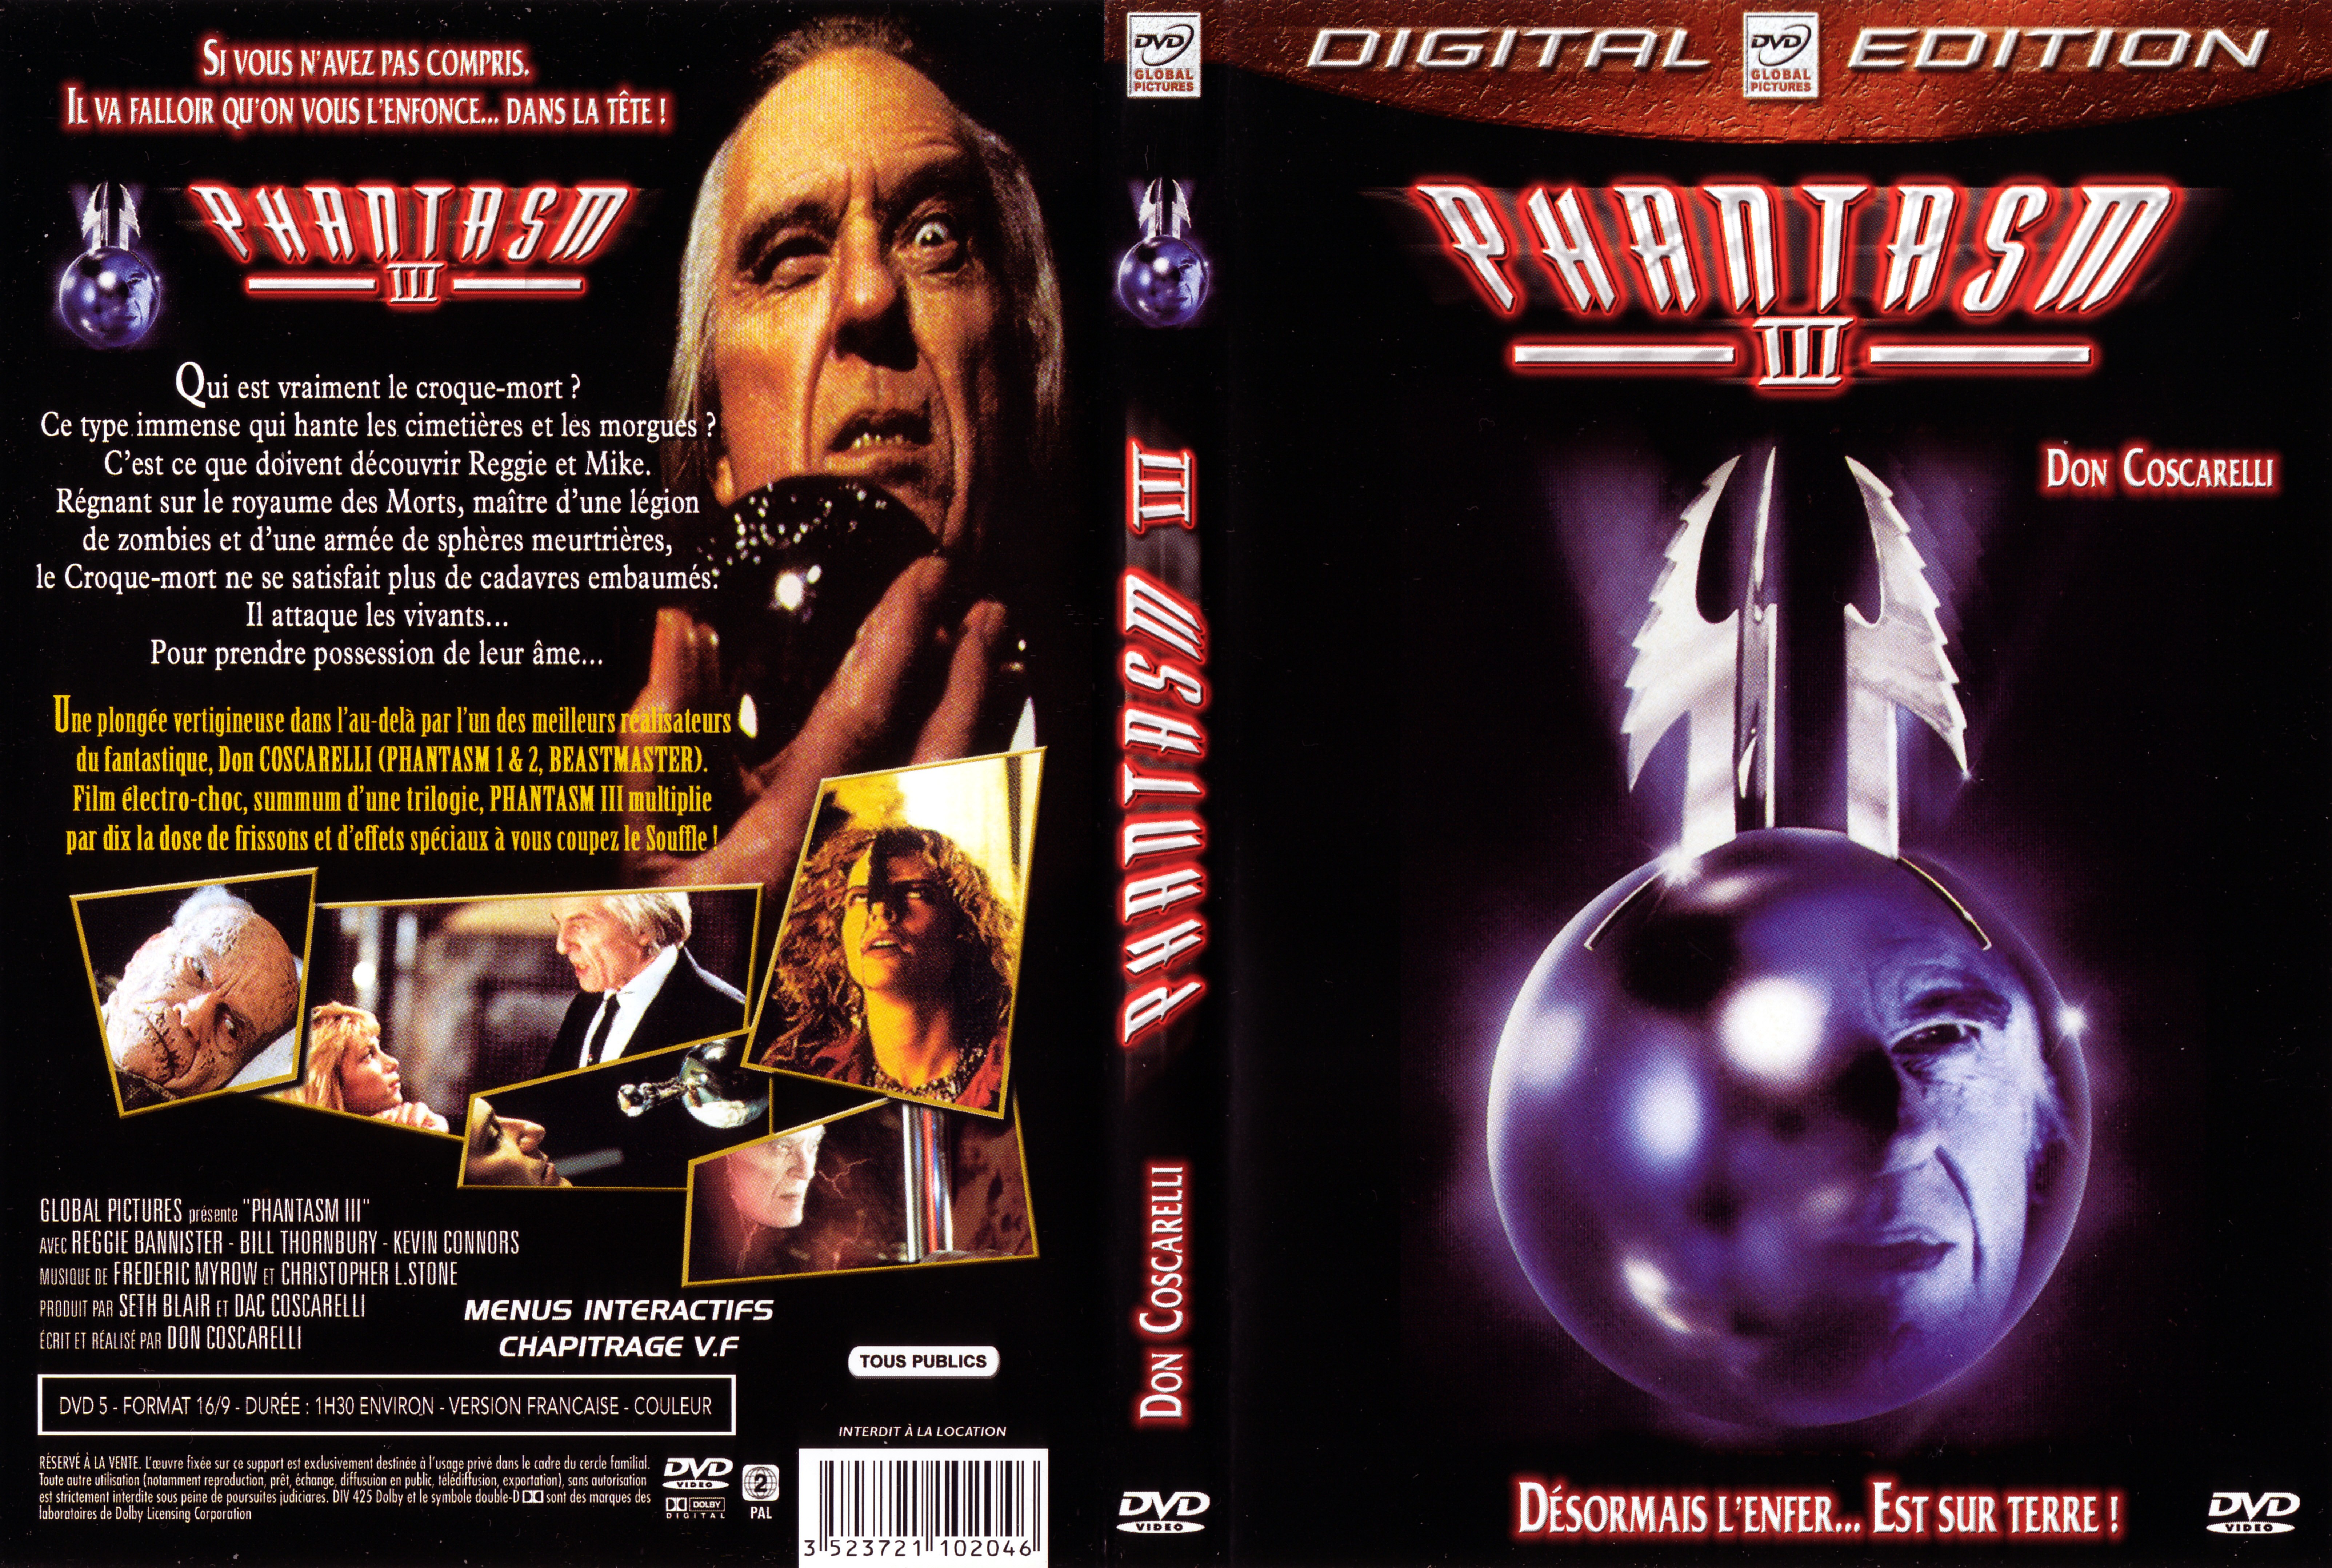 Jaquette DVD Phantasm 3 v2